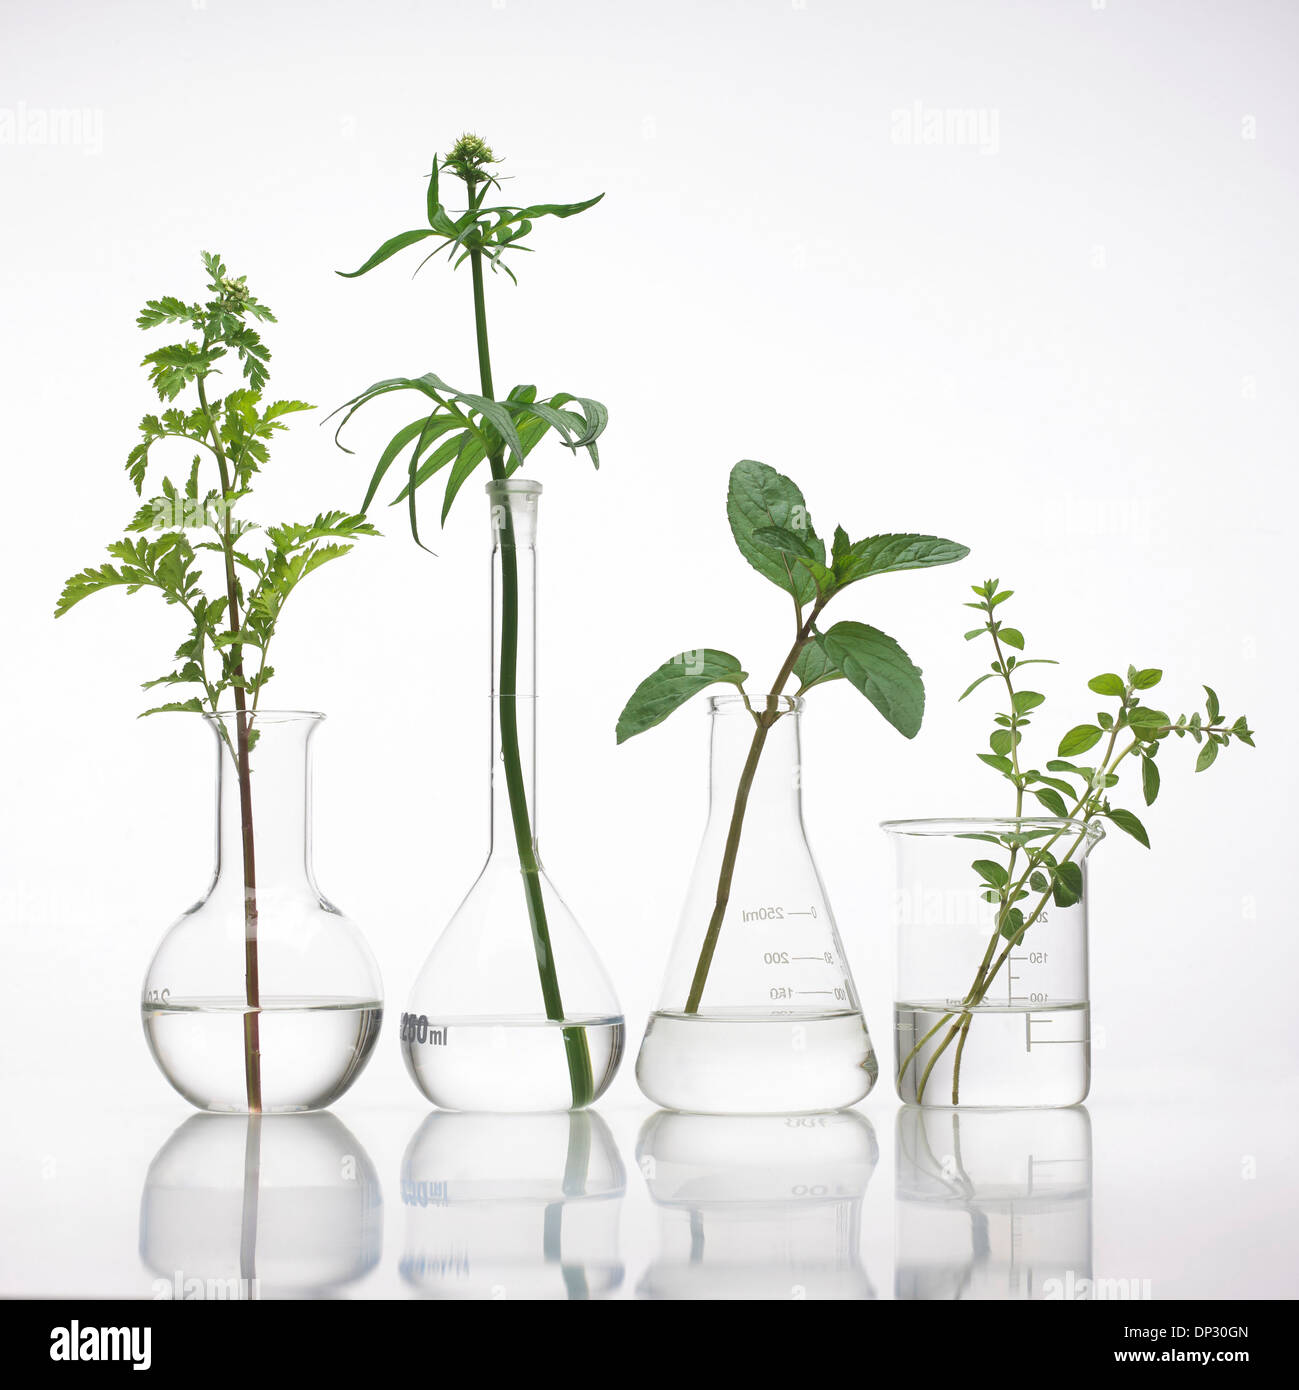 Plantas medicinales, imagen conceptual Foto de stock